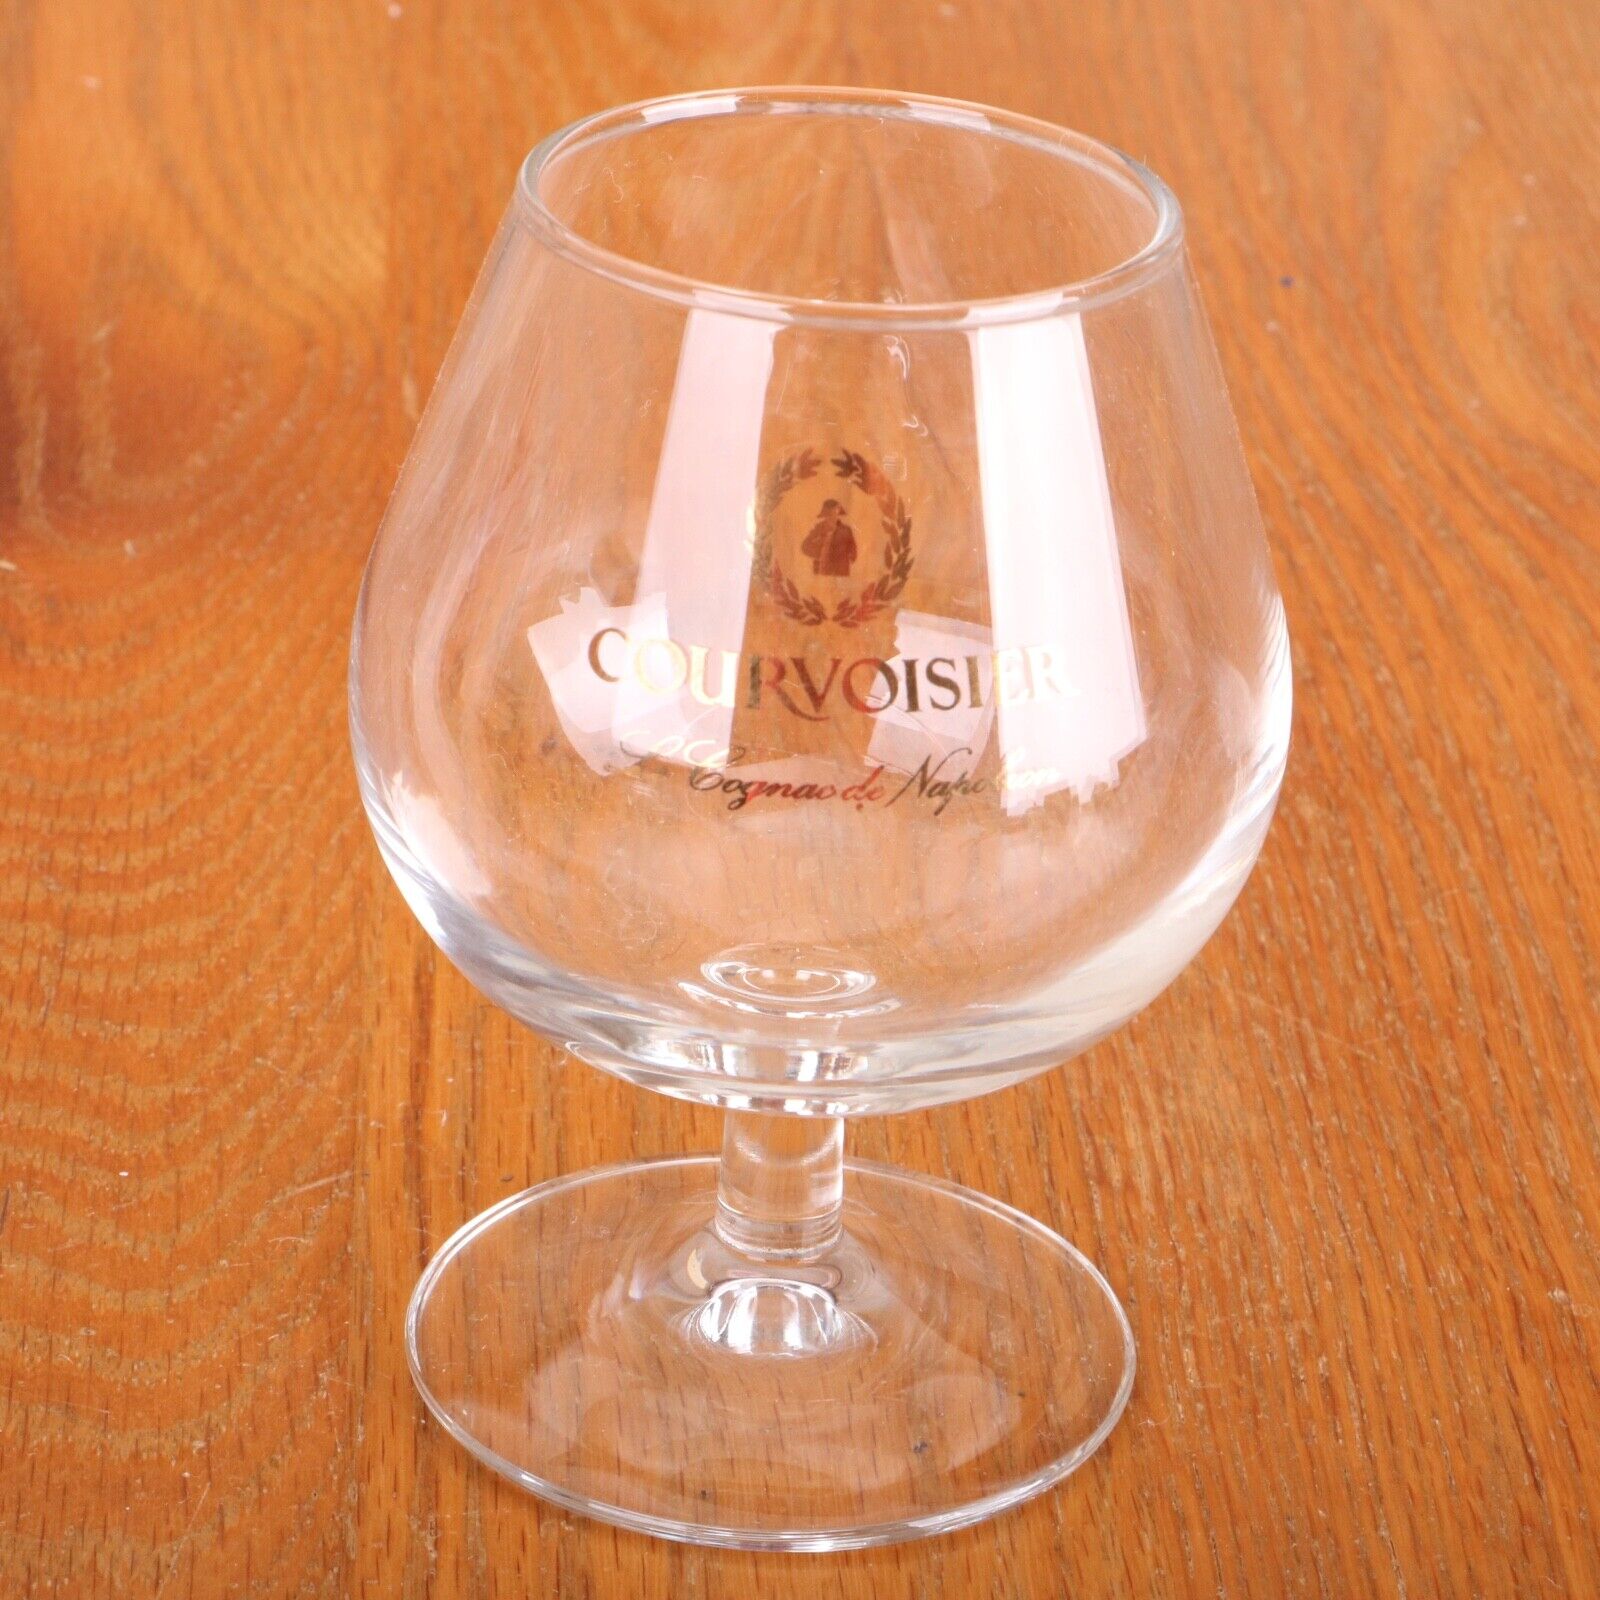 Courvoisier Le Cognac de Napoleon Snifter Glass